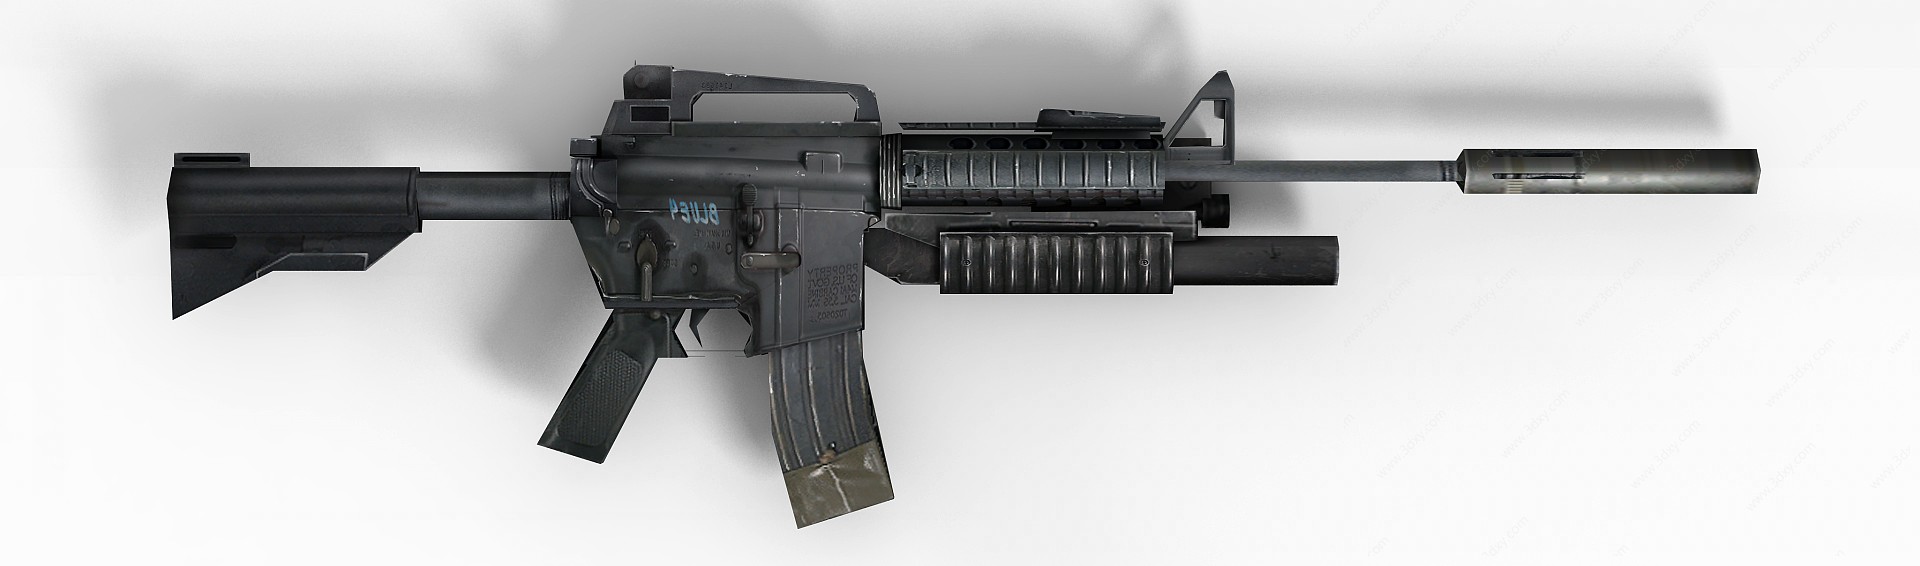 COD5武器消音冲锋枪3D模型